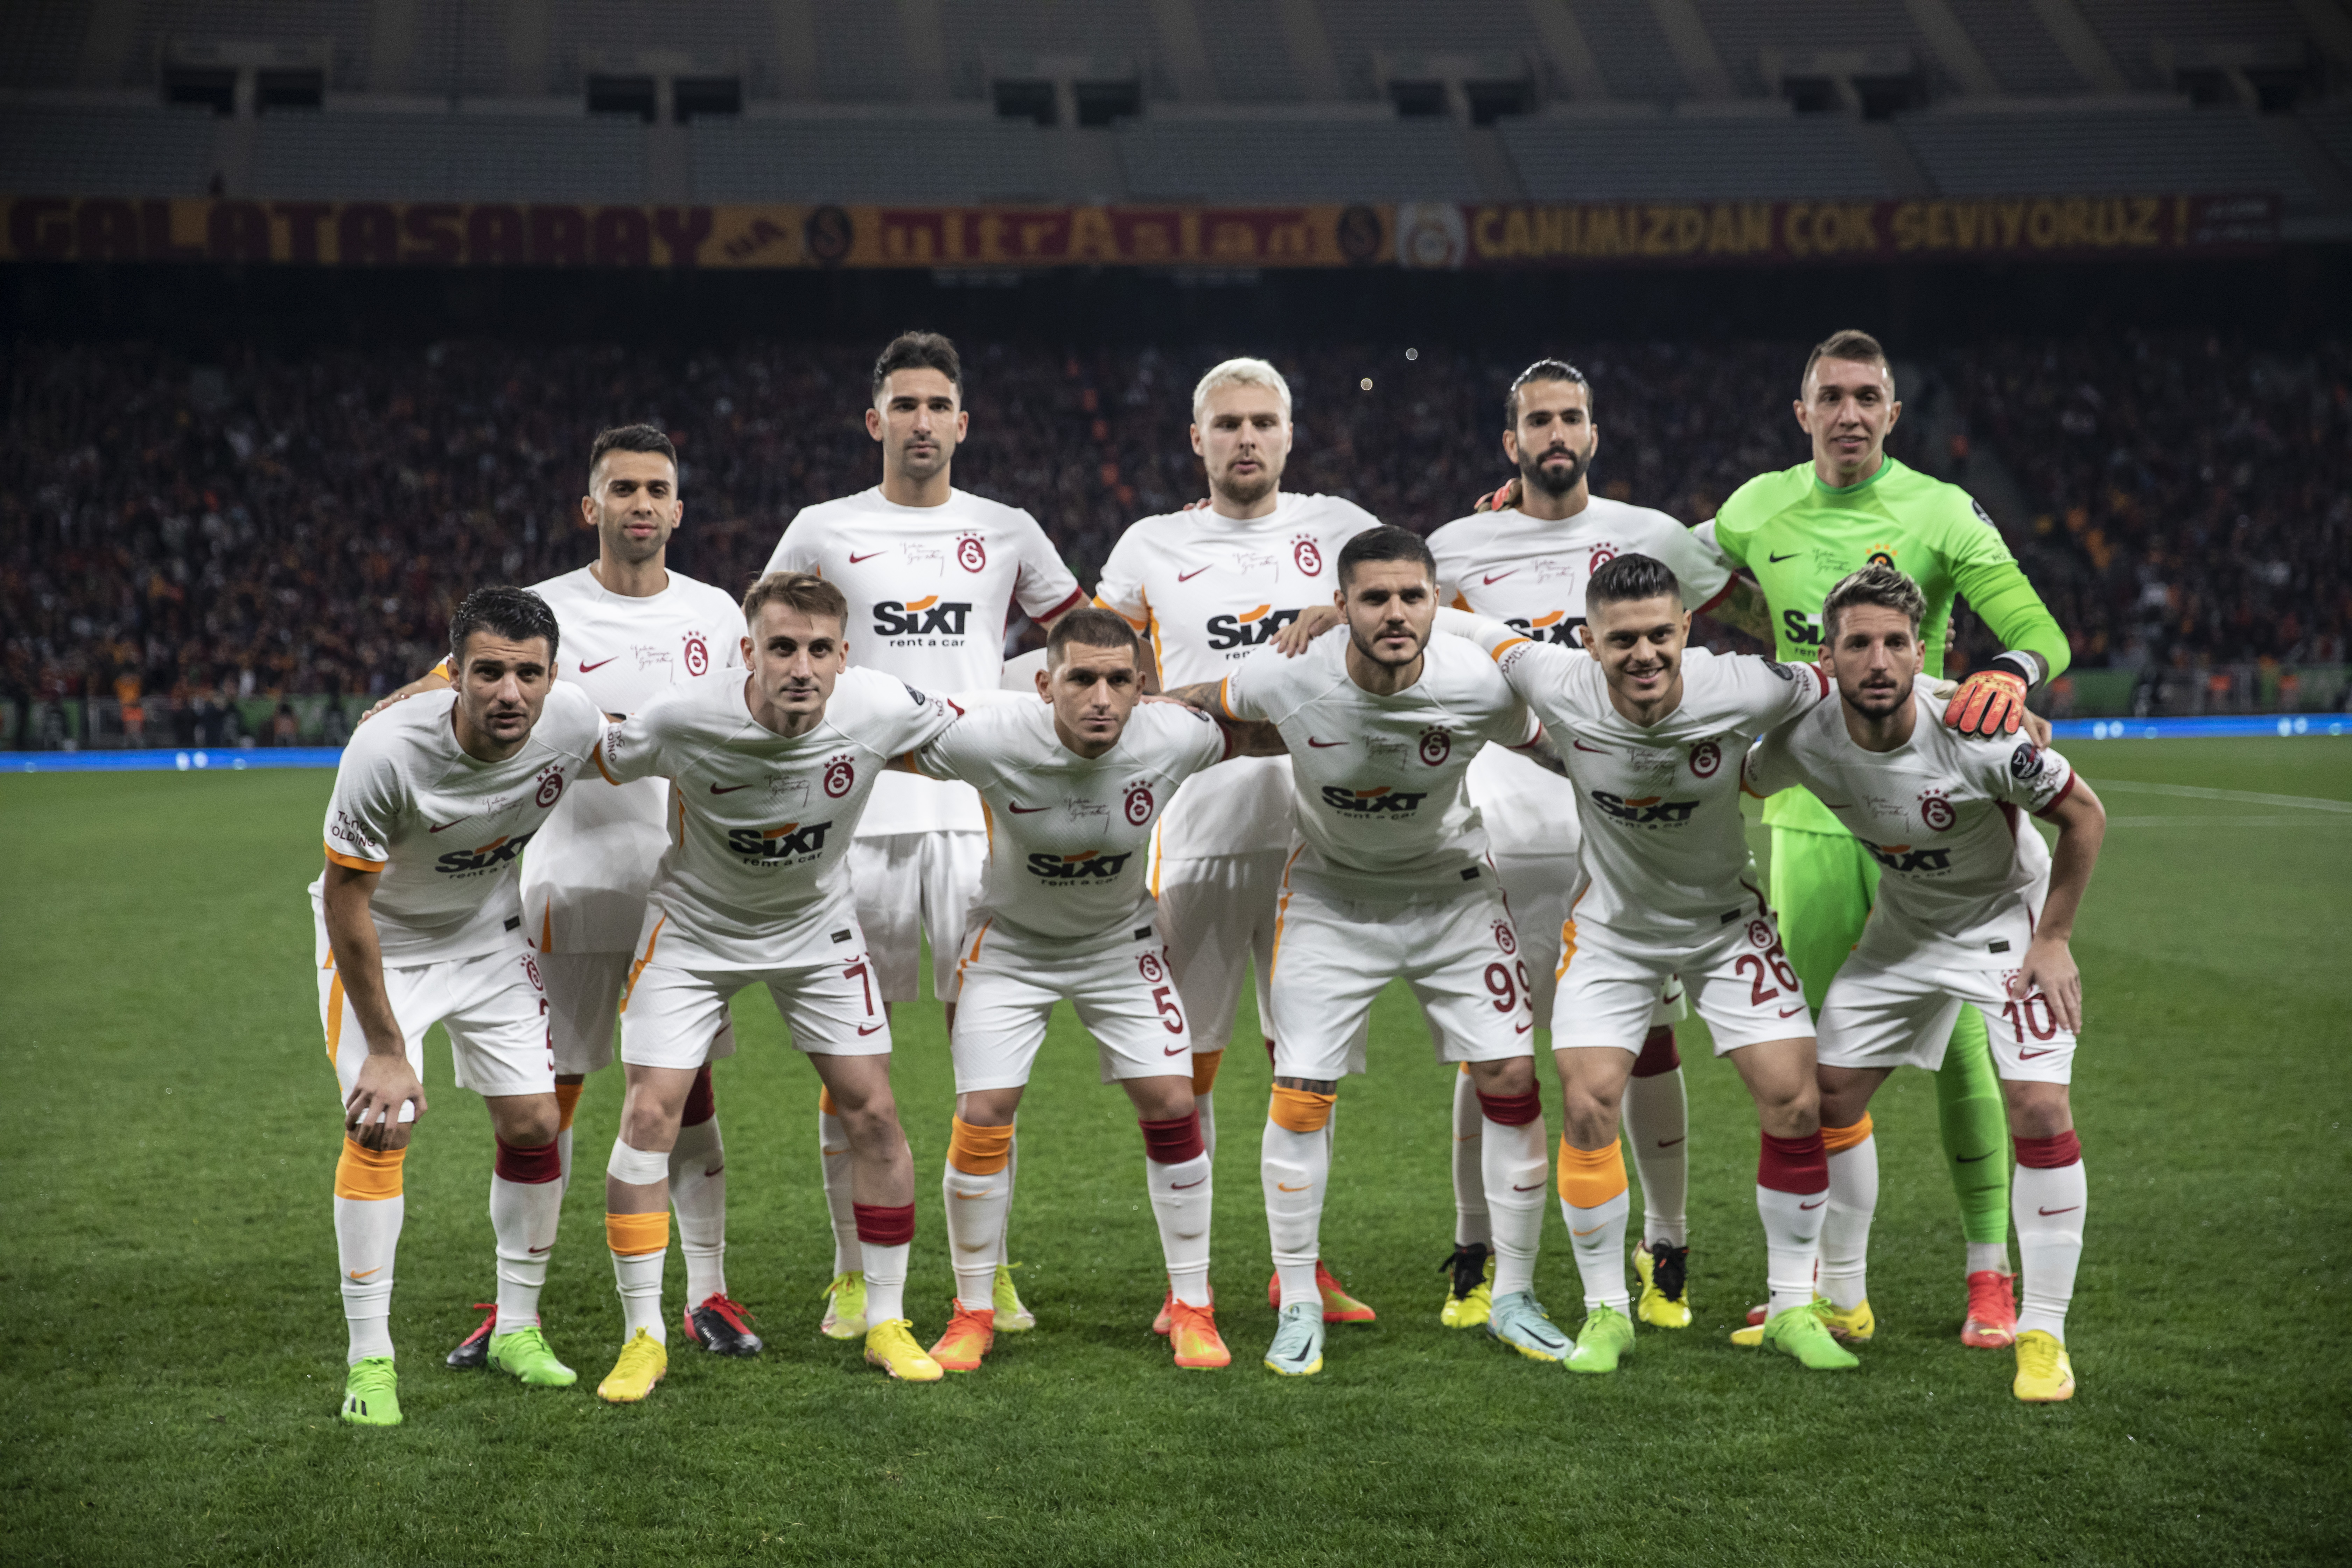 Beşiktaş'ın Galatasaray derbisi ilk 11'i belli oldu! - Orta Çizgi - Beşiktaş  Haberleri